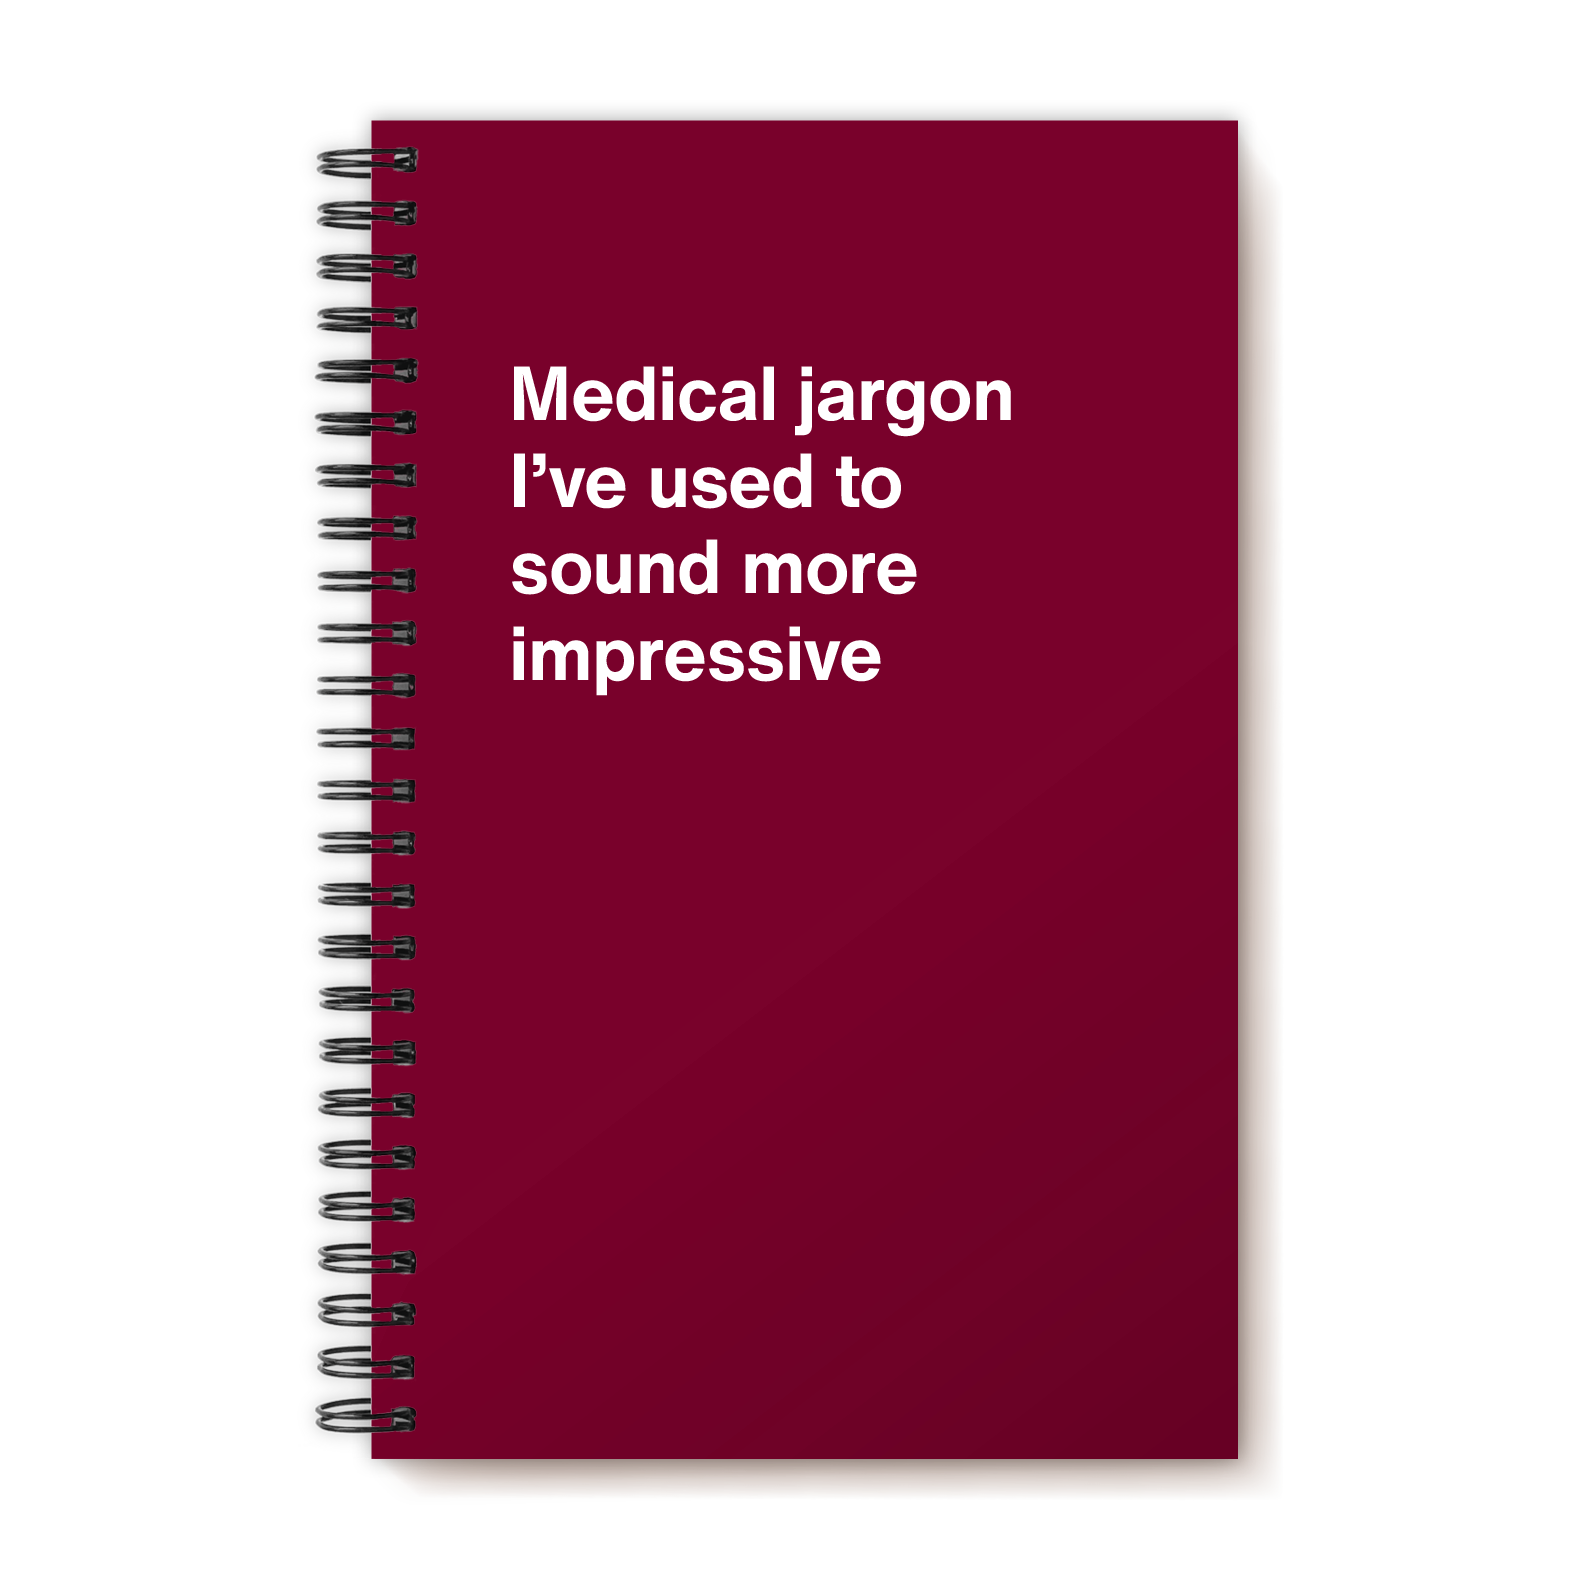 Medical jargon I've used to sound more impressive